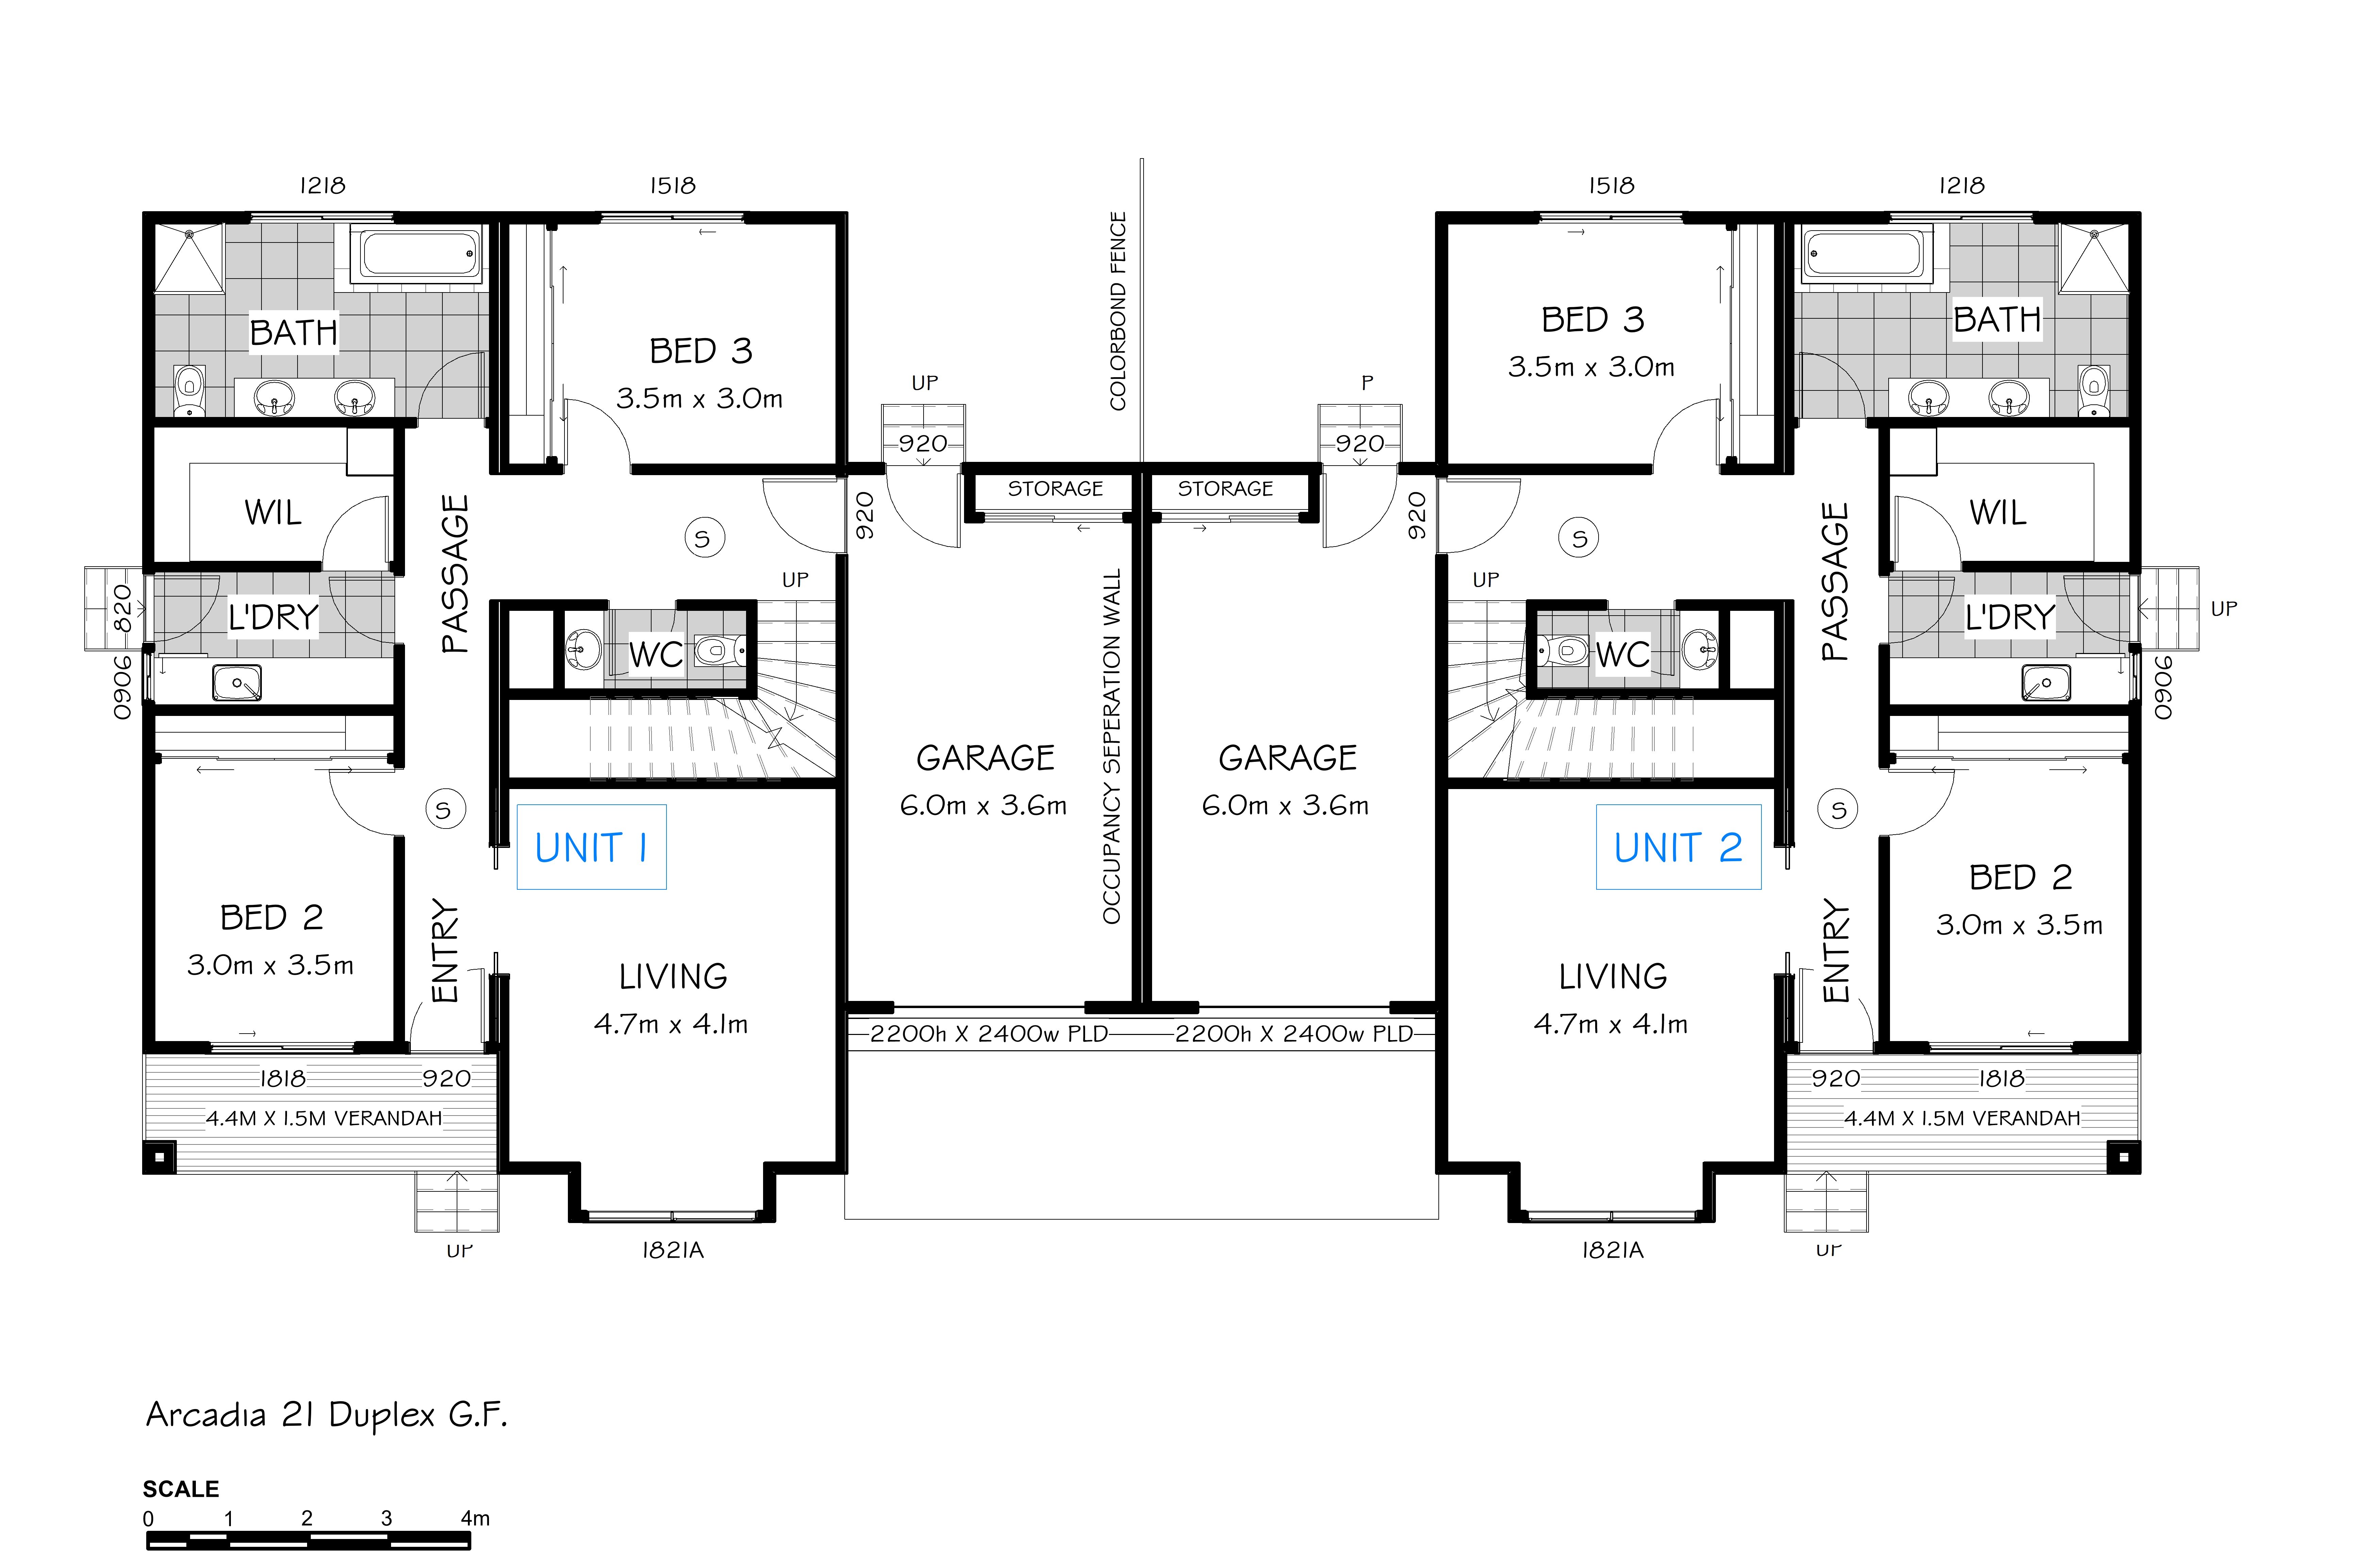 Arcadia 21 Duplex - Ground Floor Plan